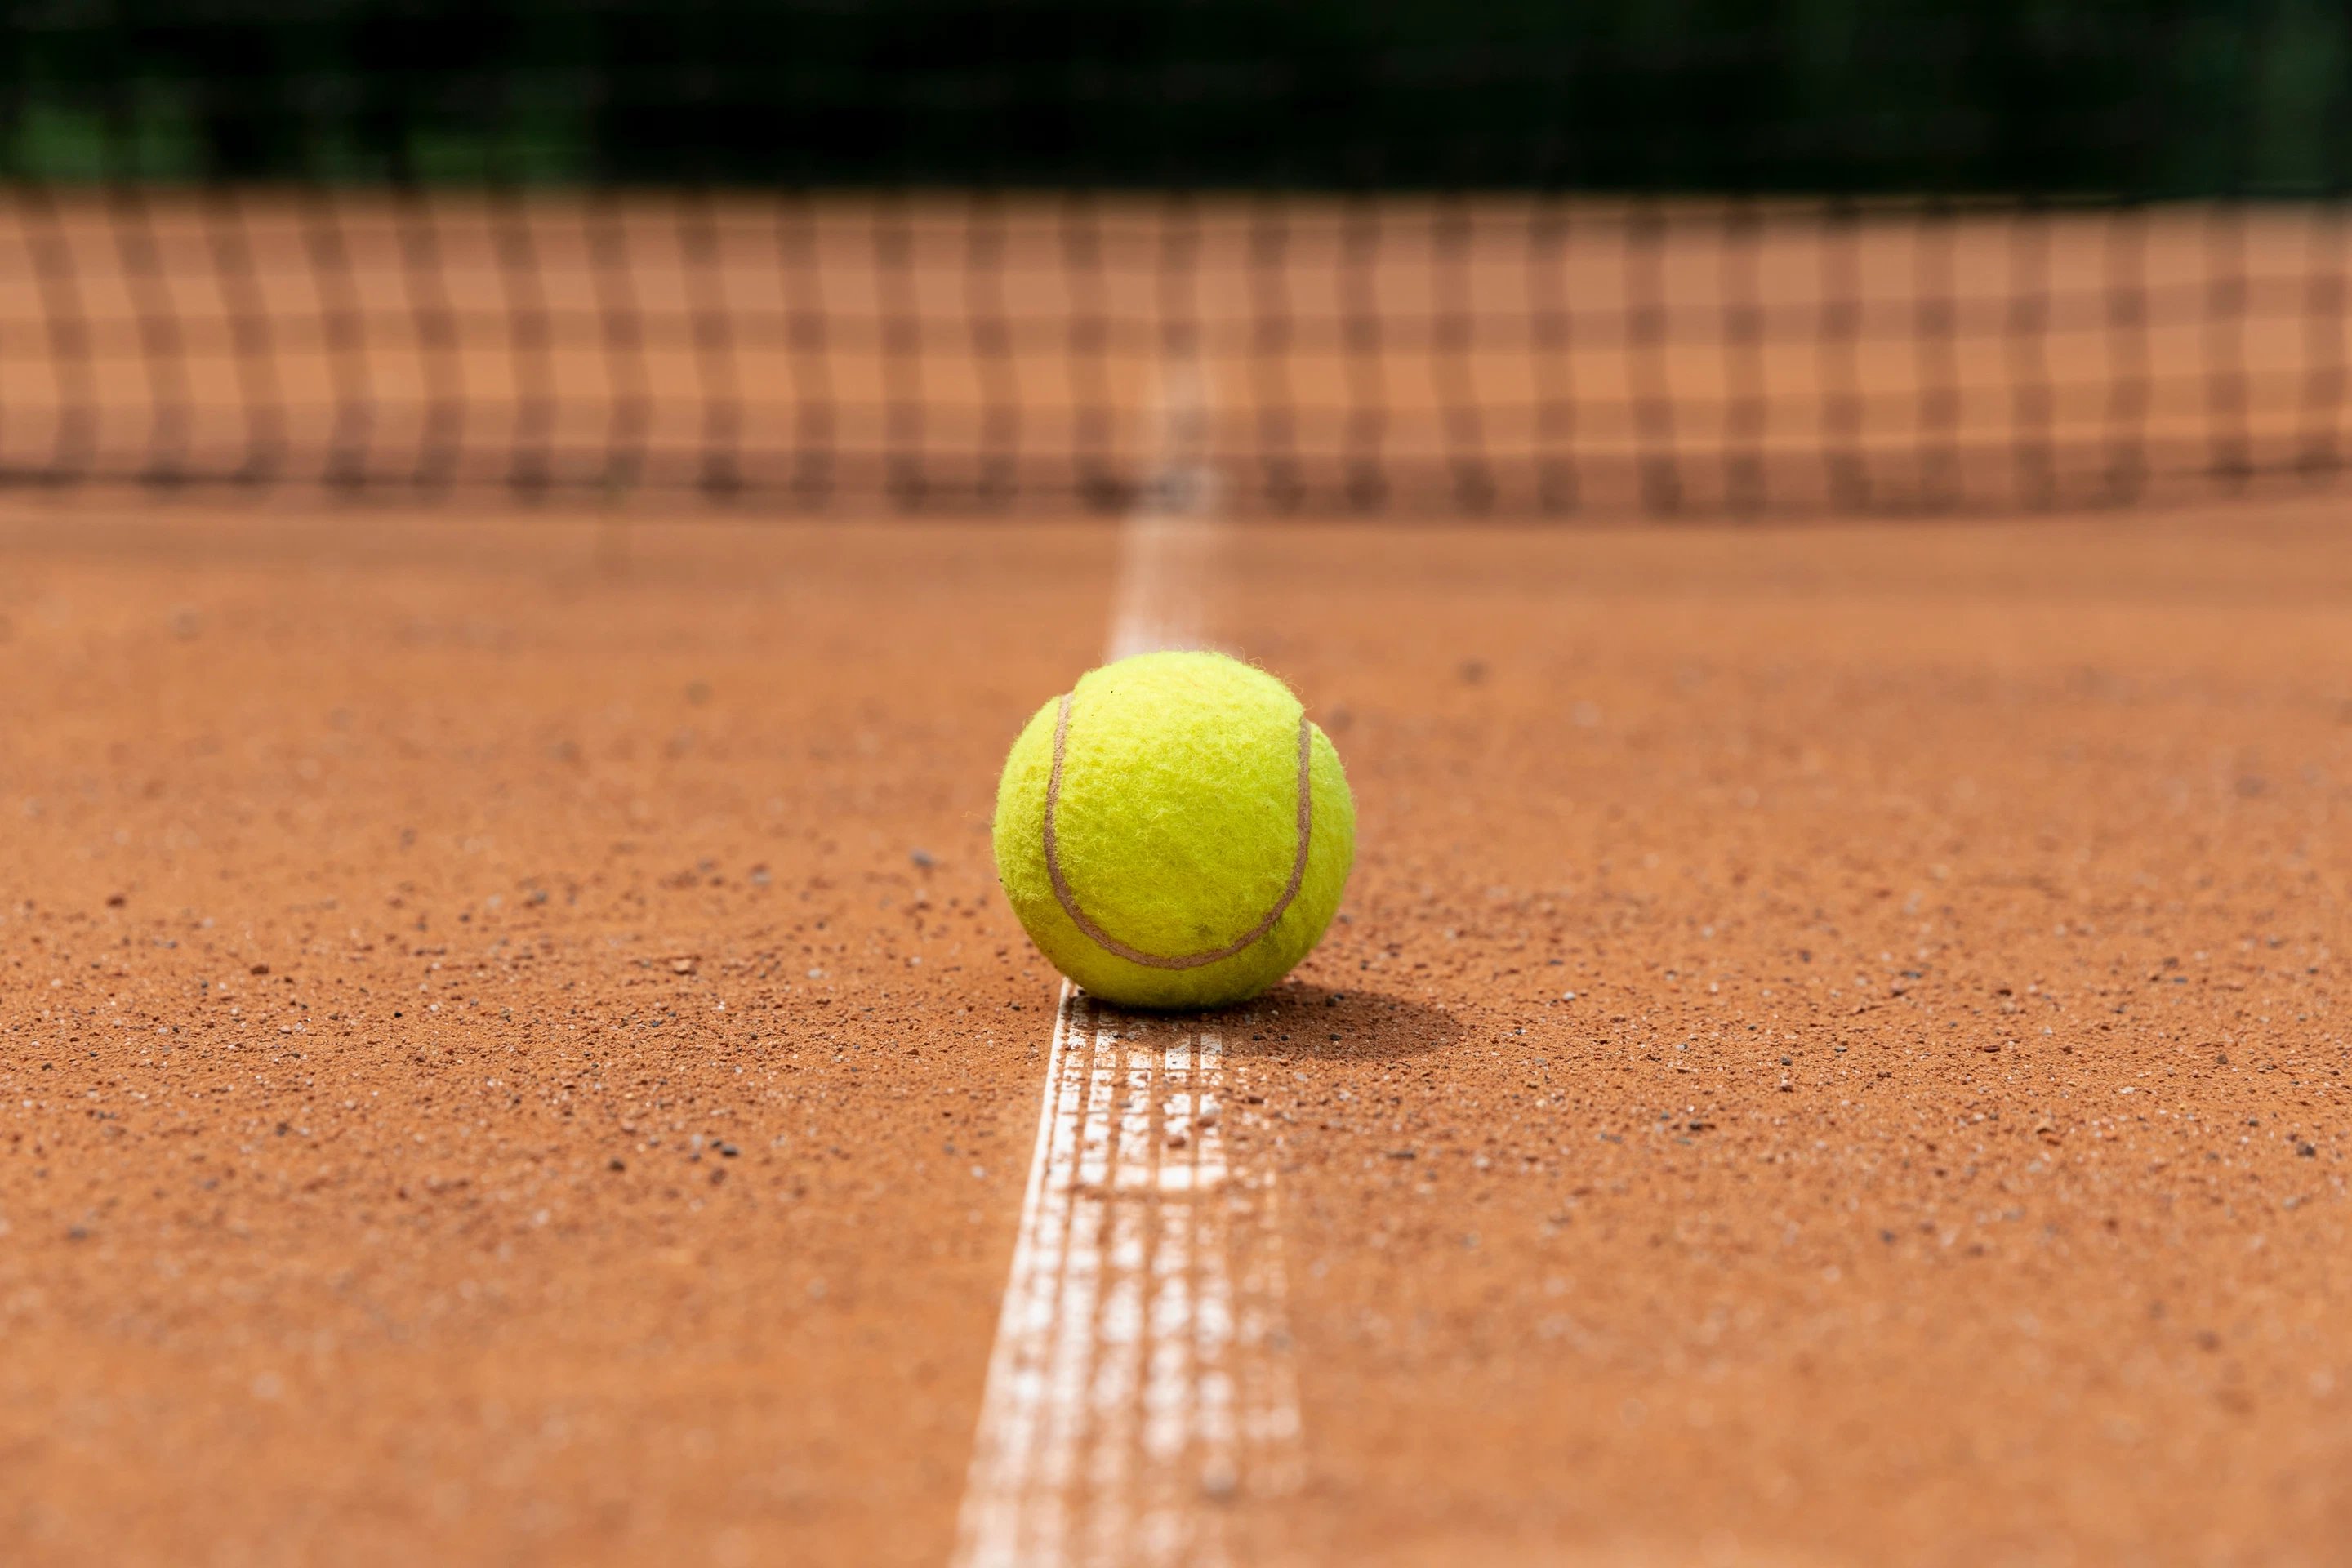 18/Activites_/front-view-tennis-ball-court-ground.jpg